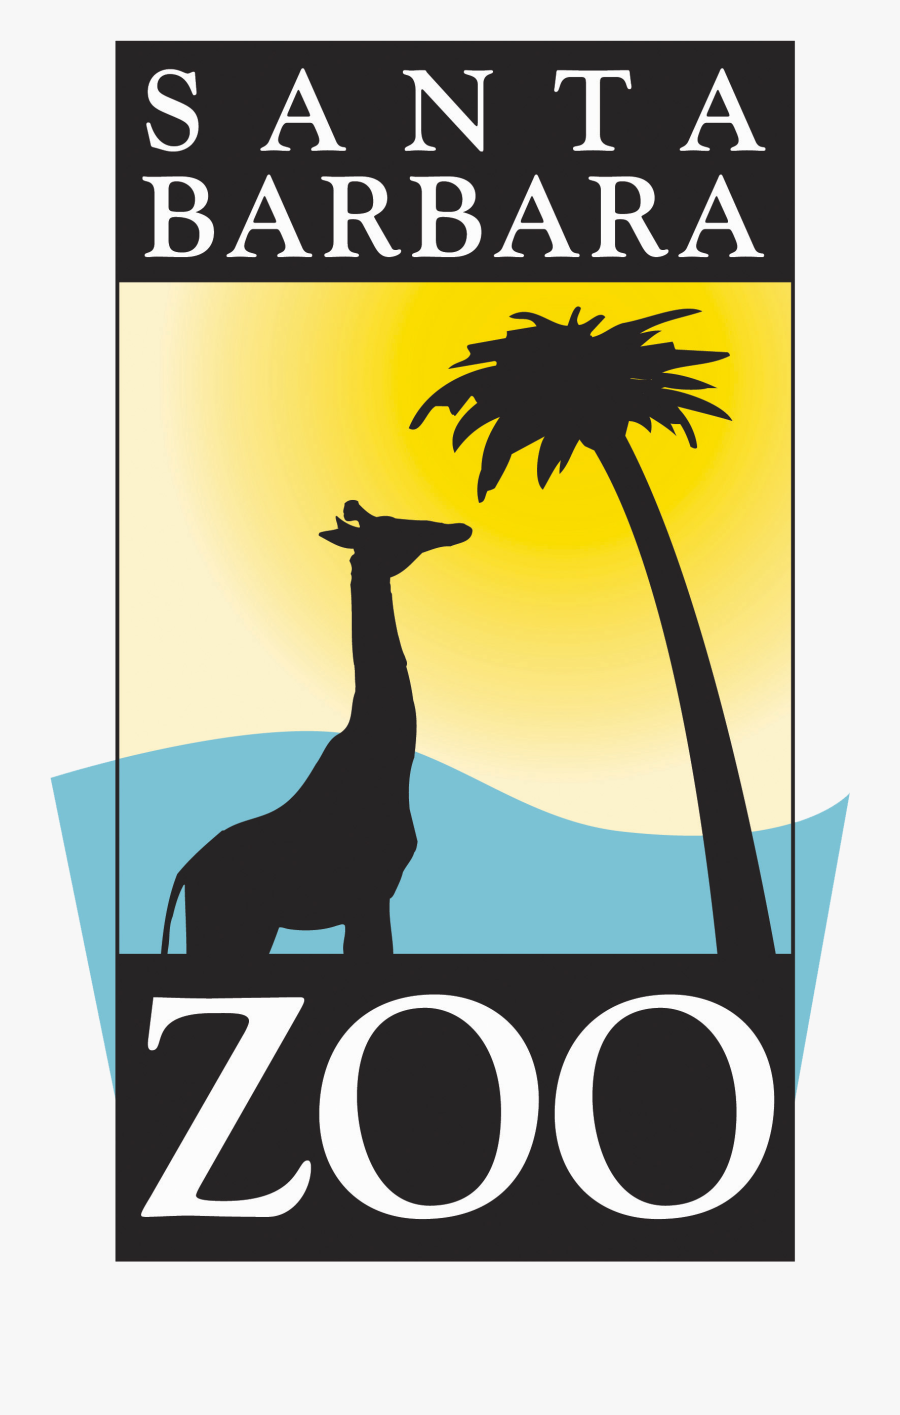 Sb Zoo - Santa Barbara Zoo Logo Png, Transparent Clipart